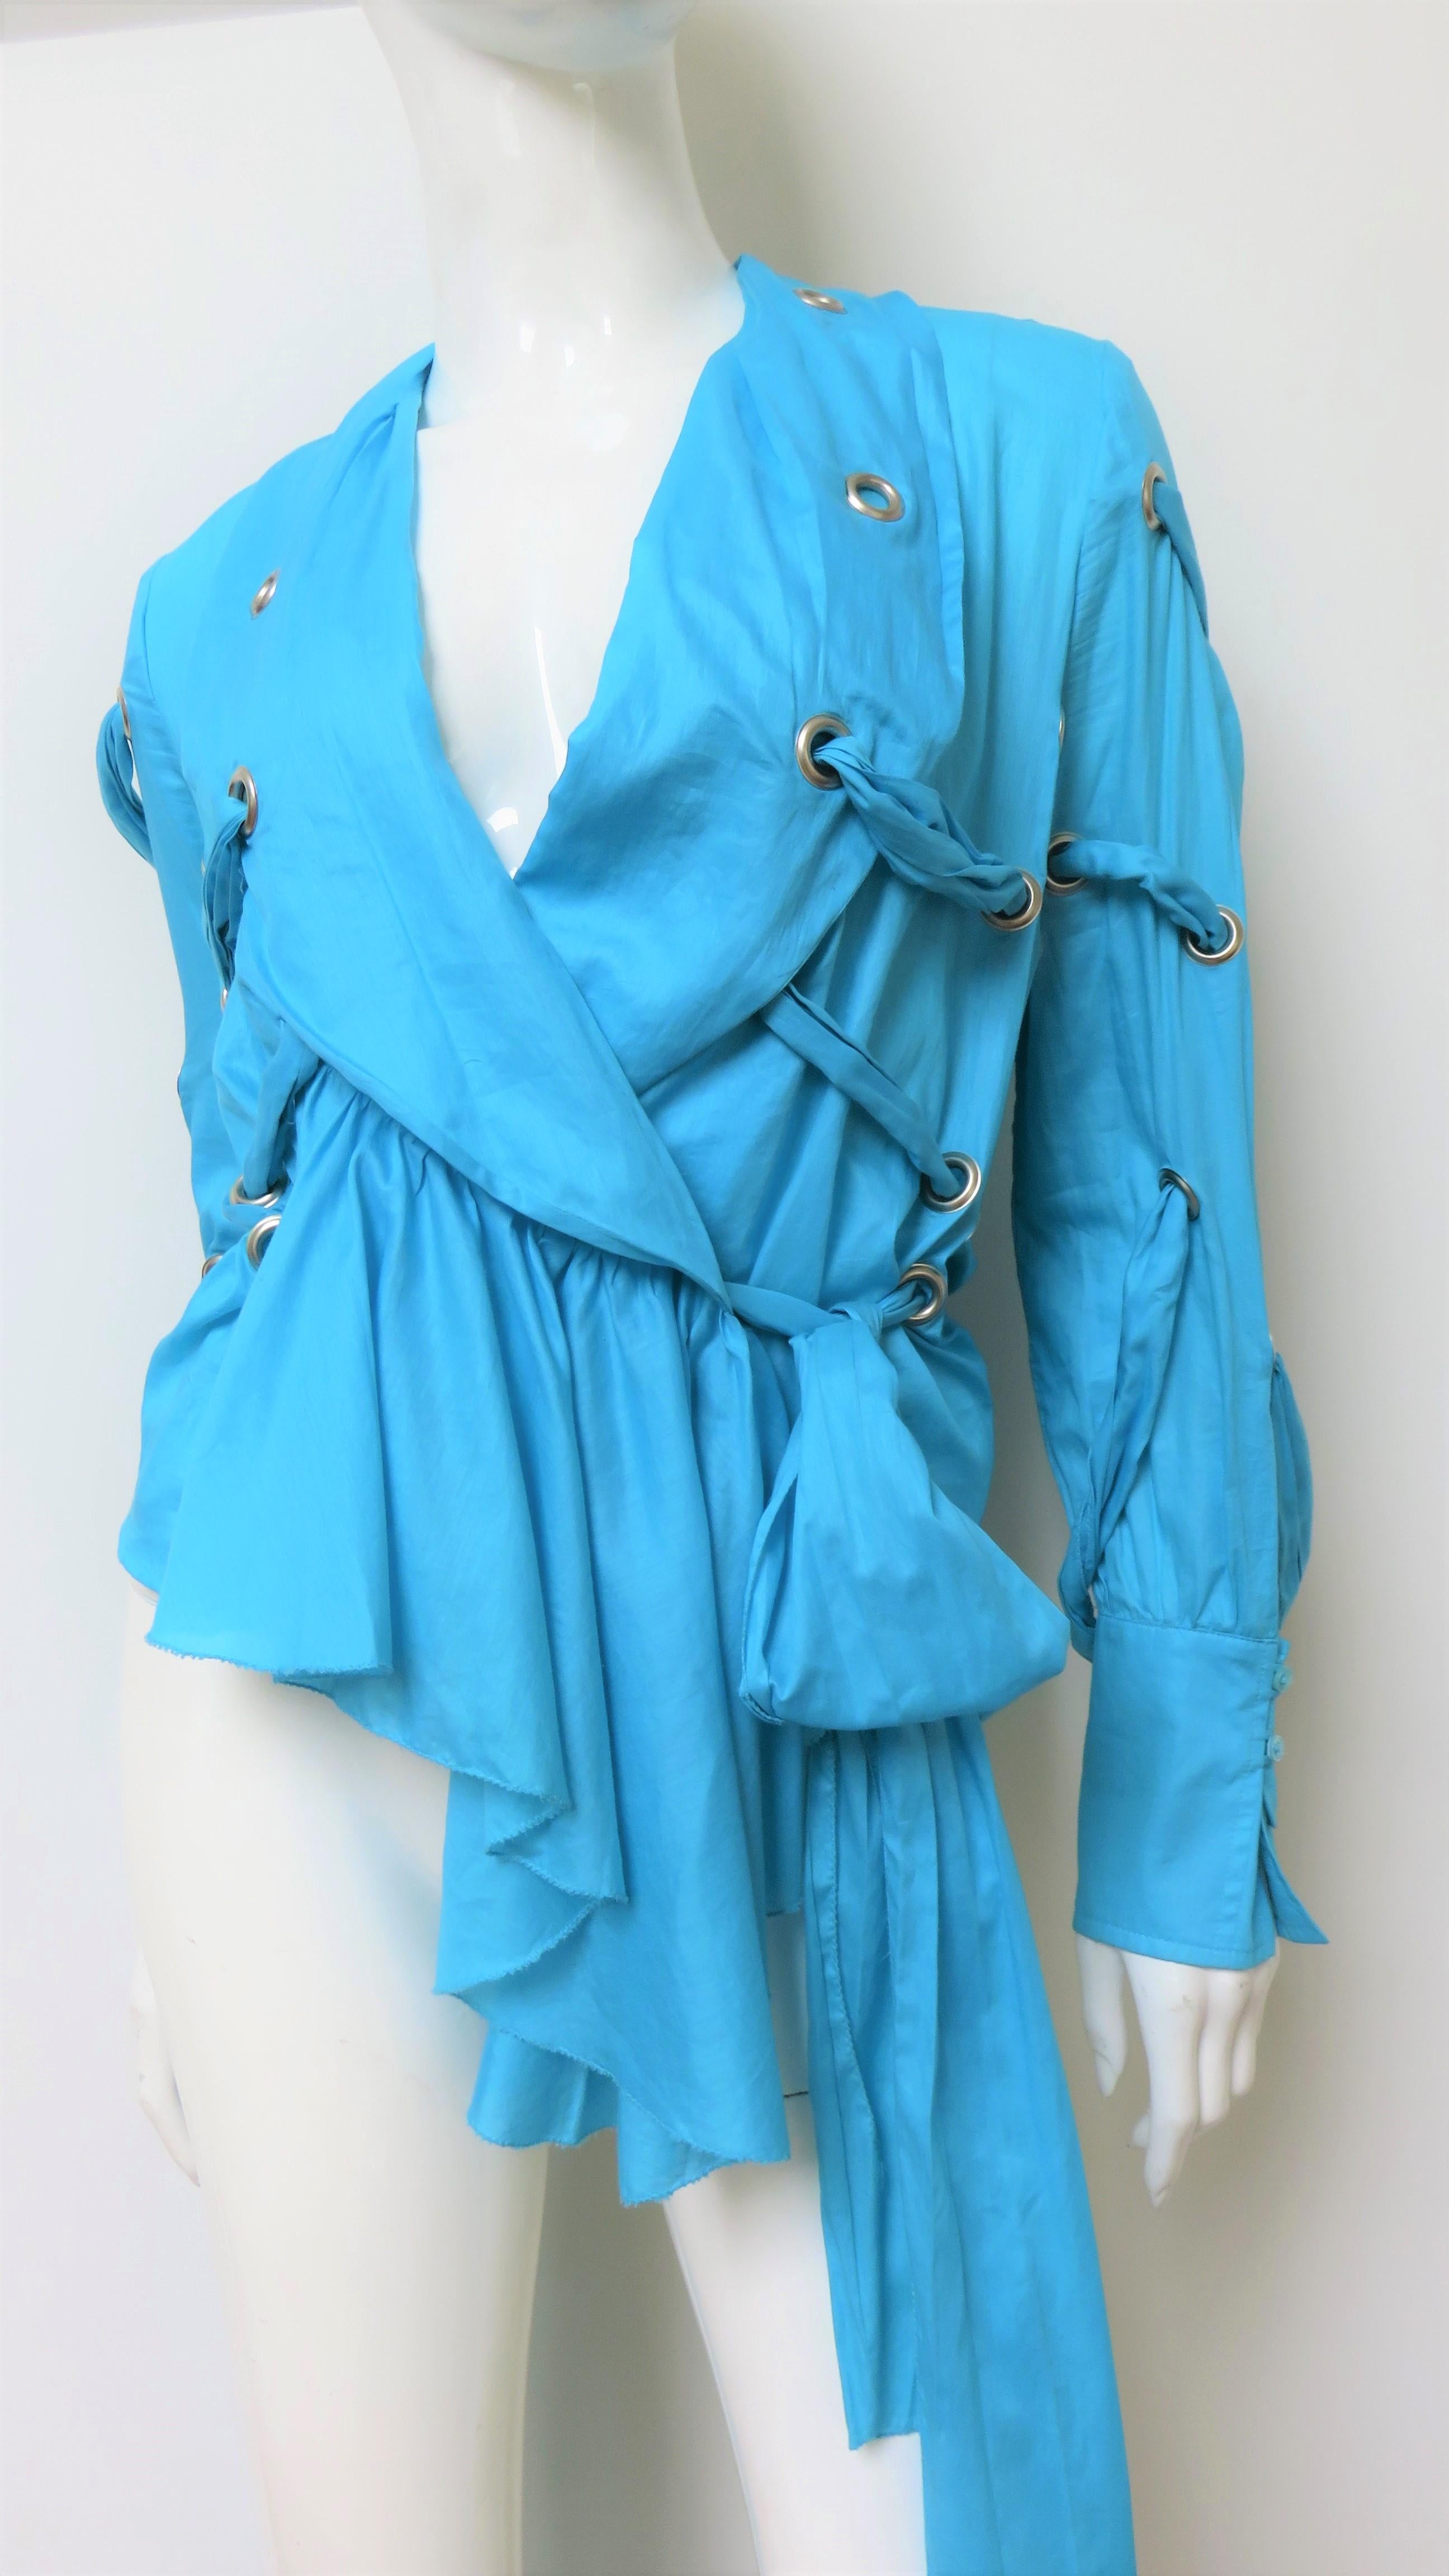 Une fabuleuse chemise, un top, un chemisier en coton fin bleu vif par Antonio Berardi.  Il présente un col châle, des poignets à boutons en nacre assortis et un ourlet asymétrique plus long sur le devant. La chemise est munie d'œillets à divers